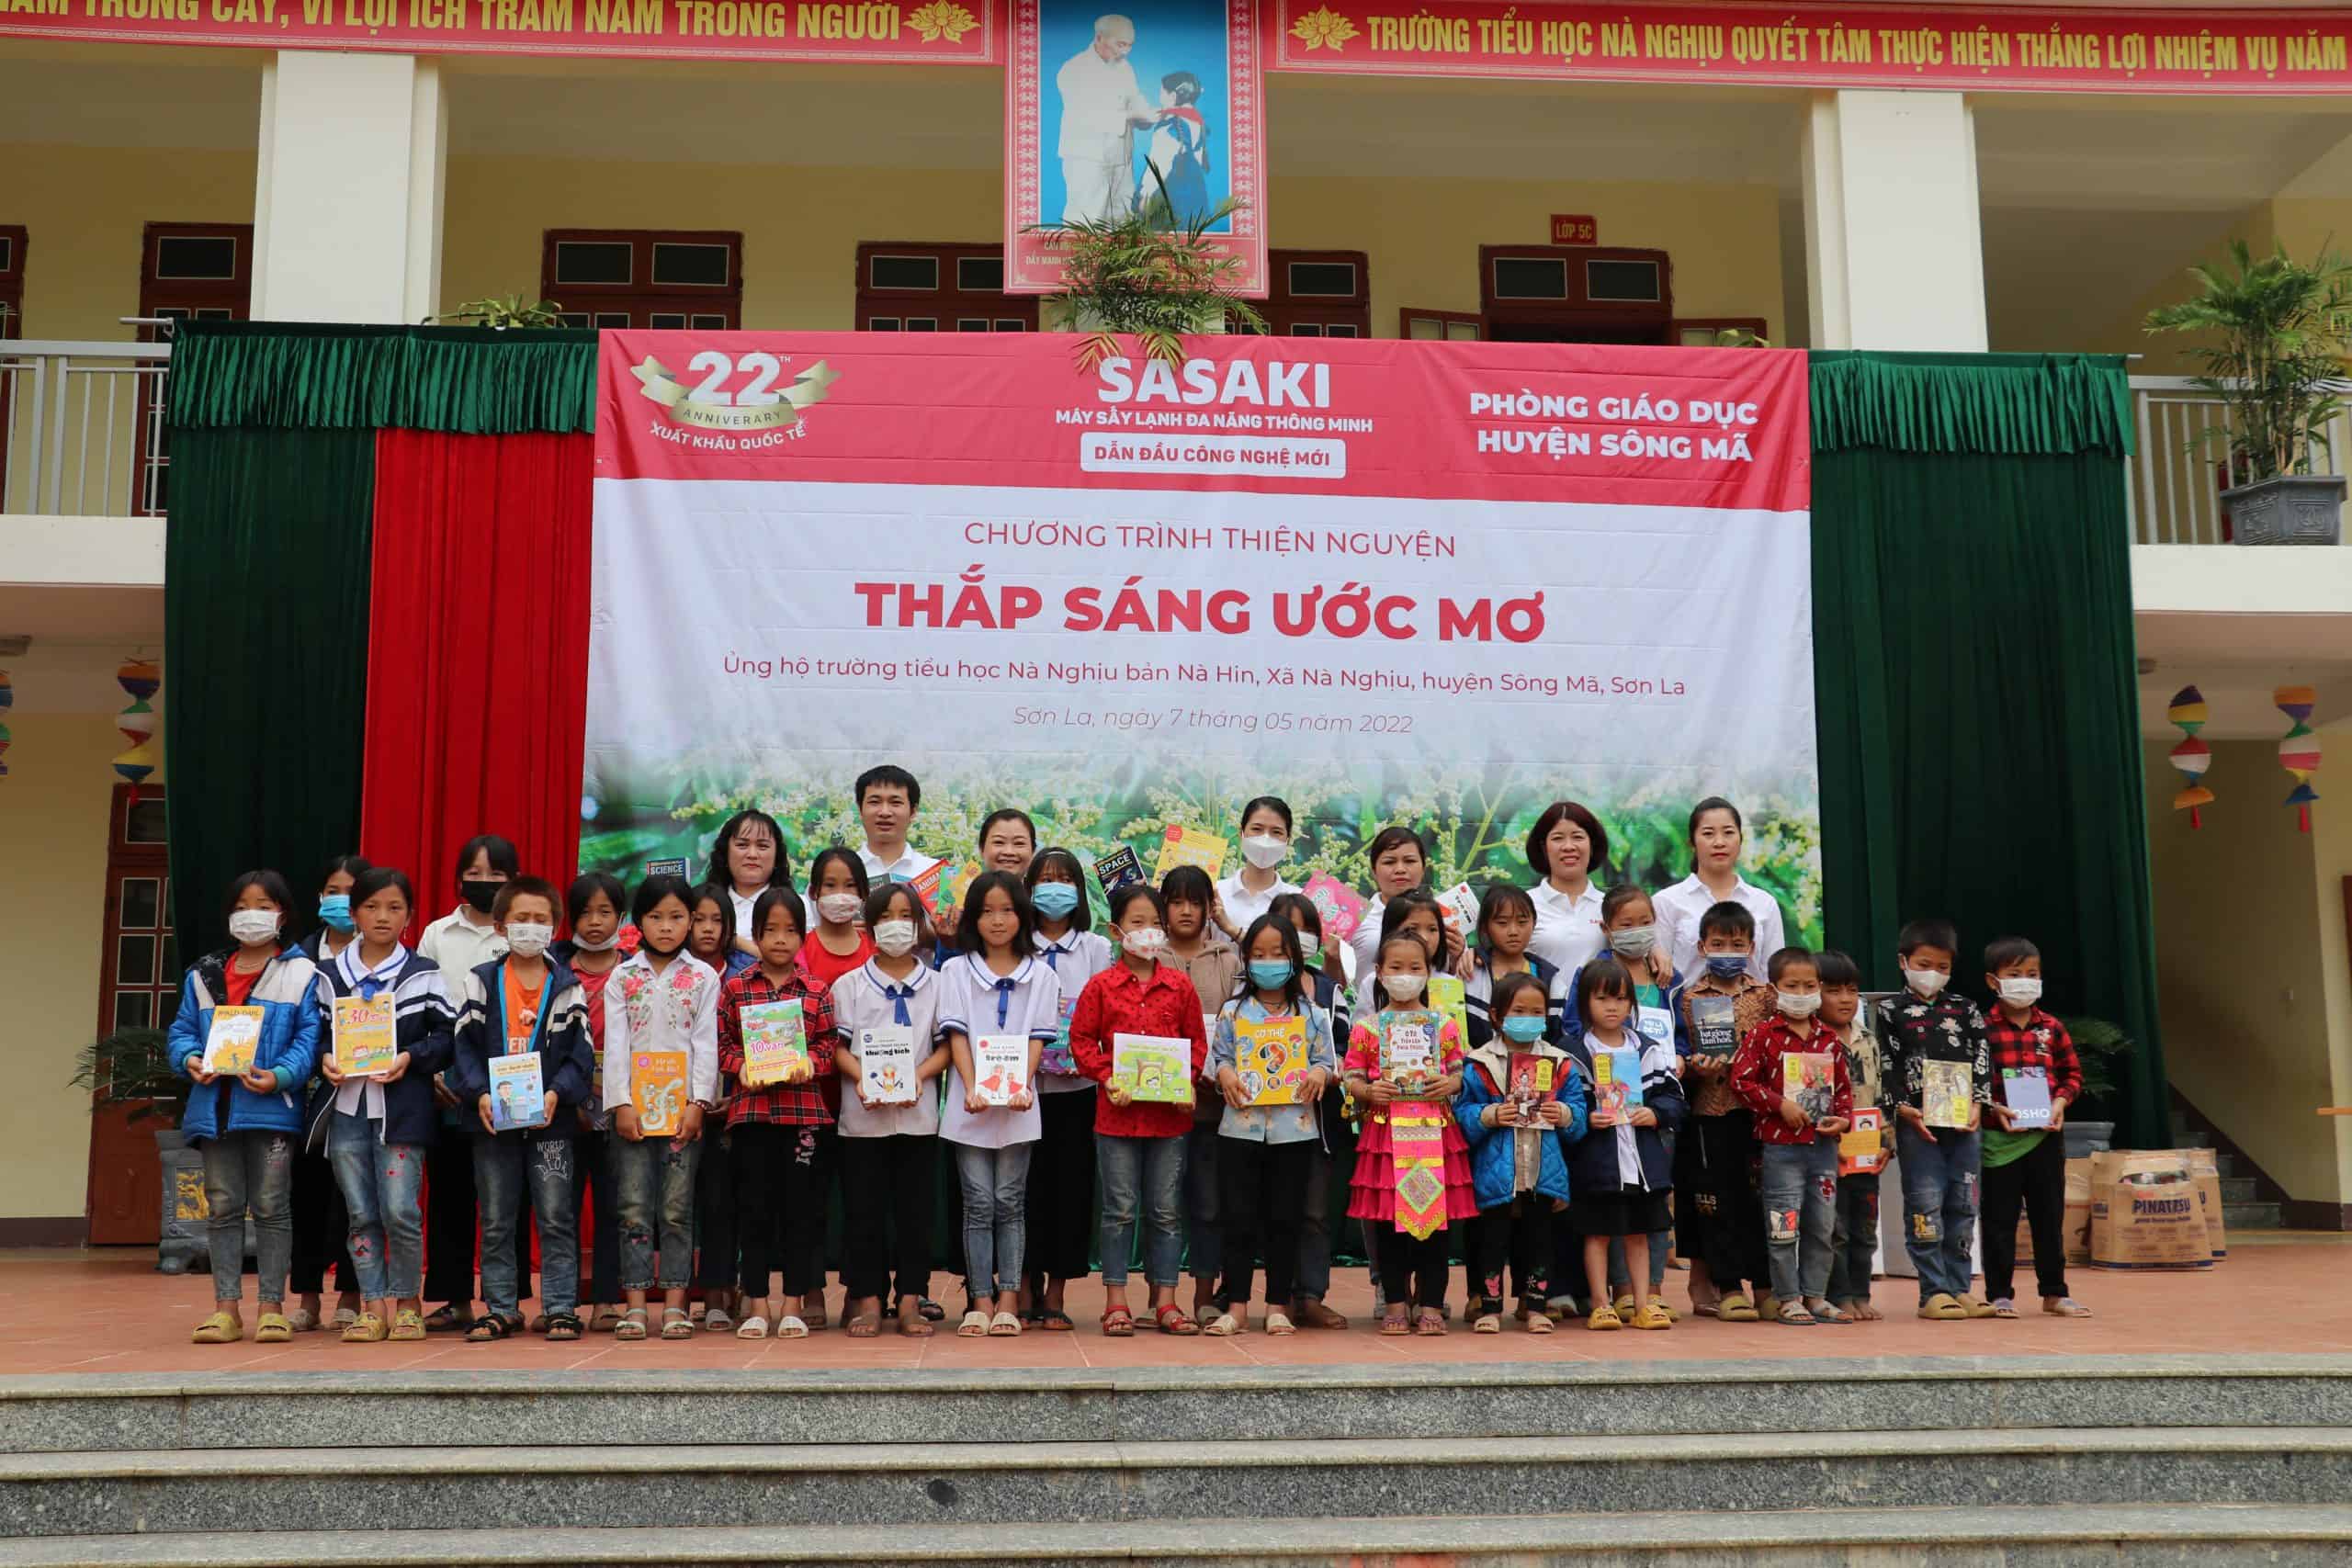 Đại diện SASAKI trao tặng các phần qua cho học sinh tiểu học trường Nà Nghịu, Sơn La